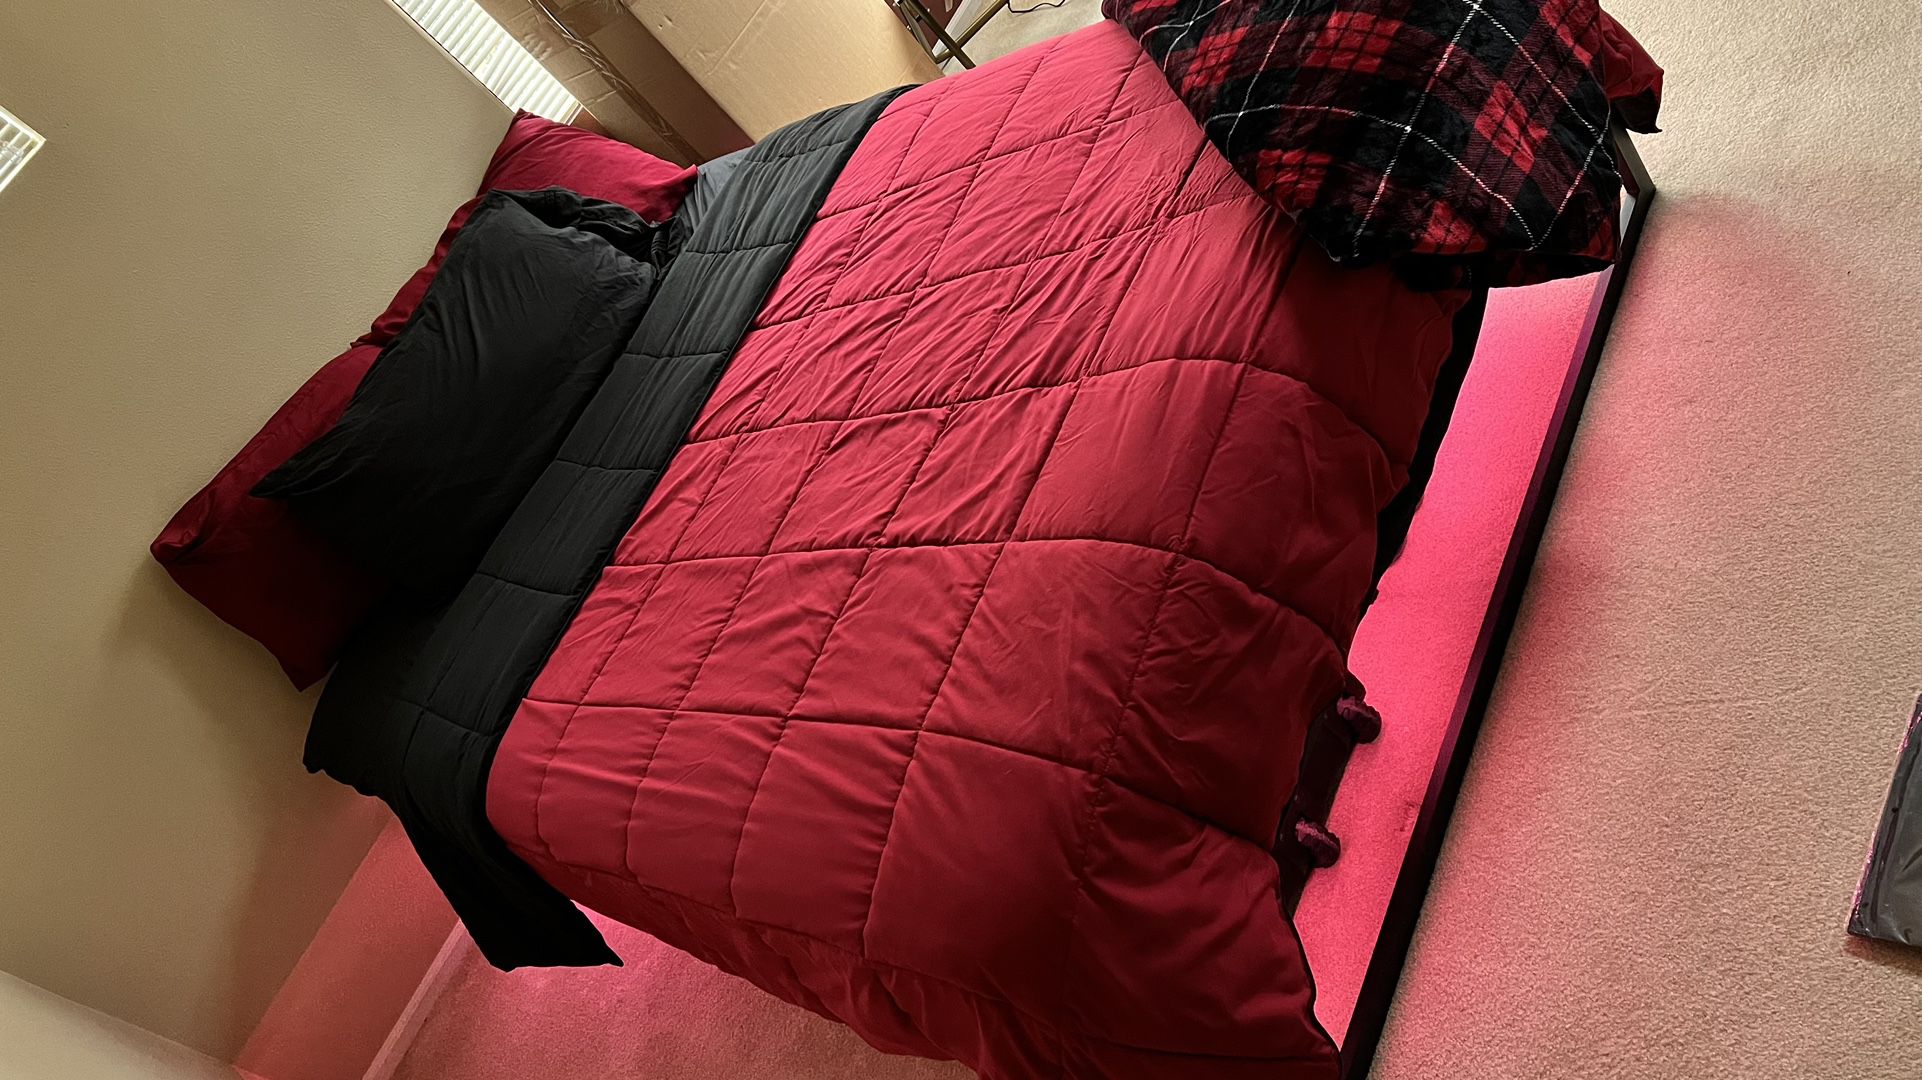 queen size mattress malouf